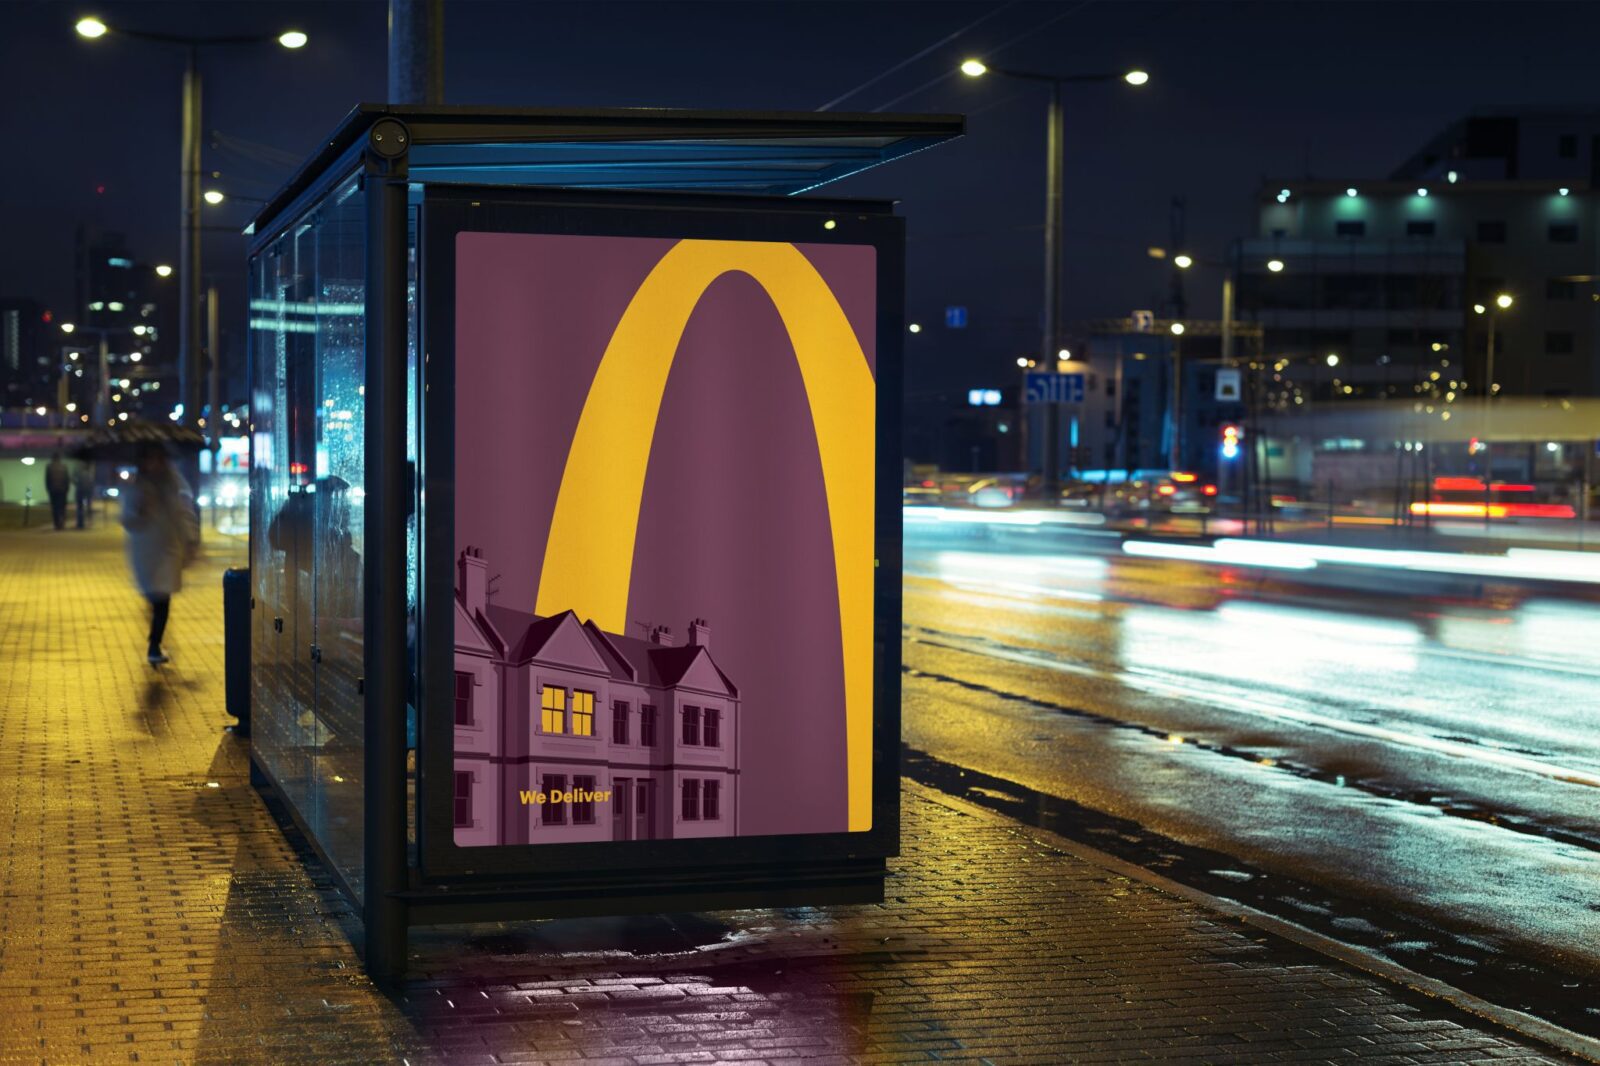 McDonald's segue nos lembrando que o print não morreu